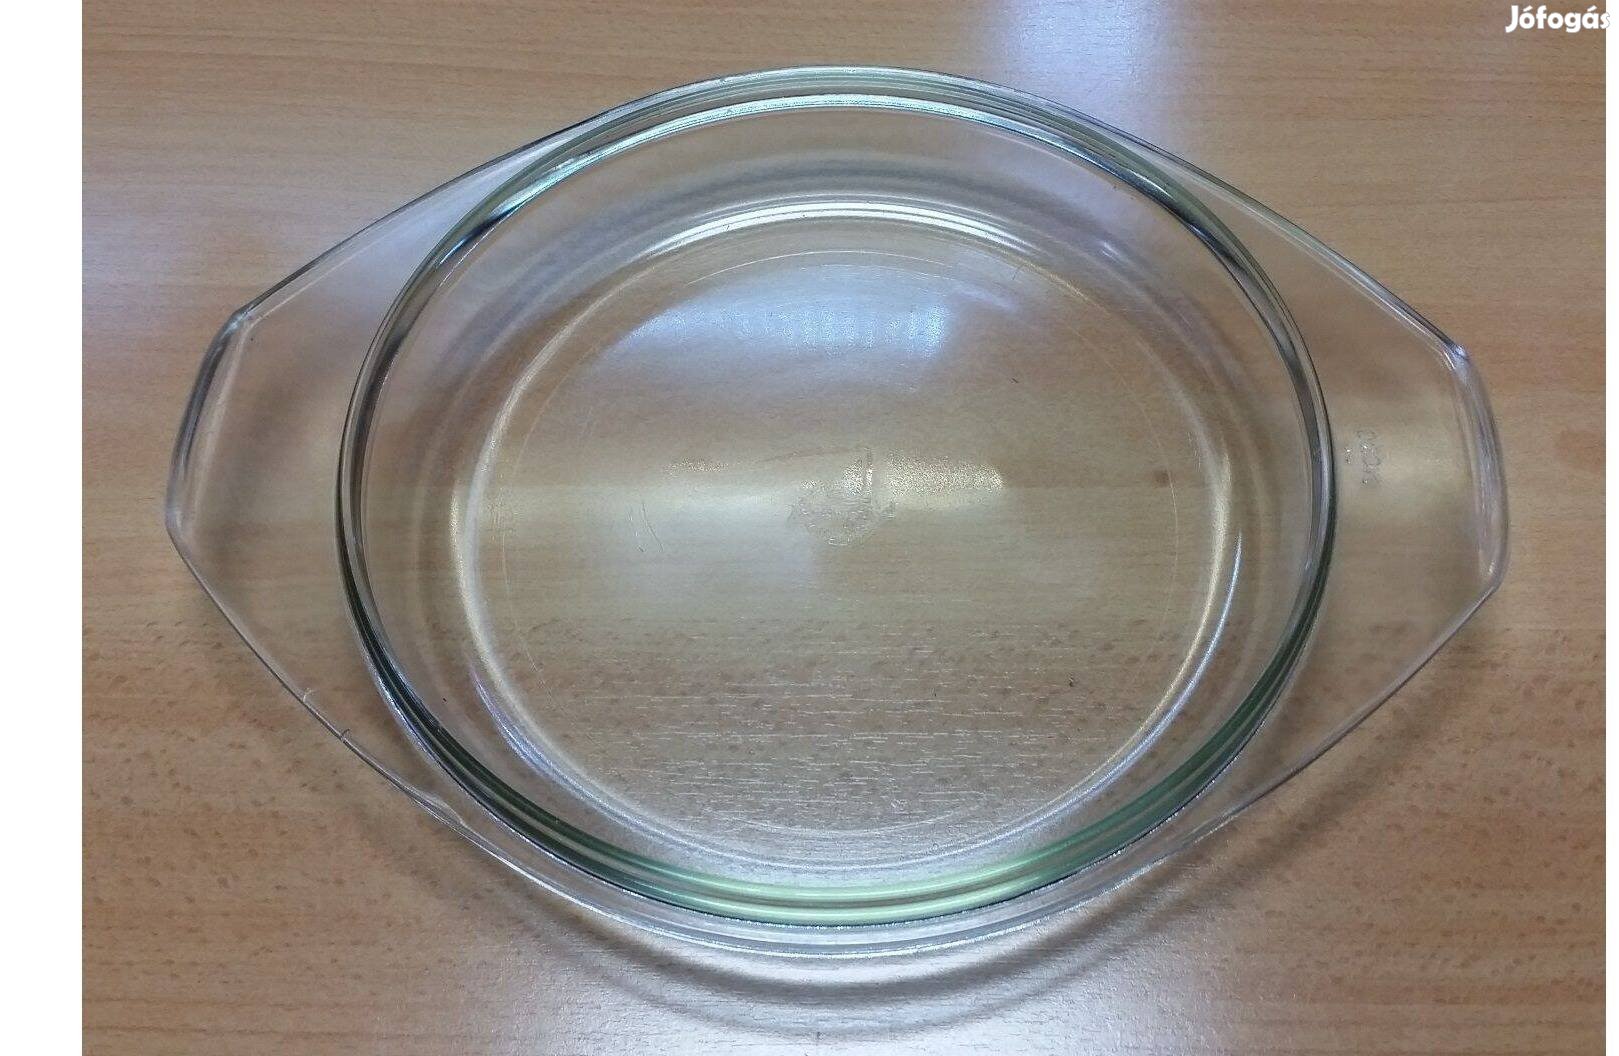 Jénai üveg tál, fedő eladó, 22,5 cm átmérőjű